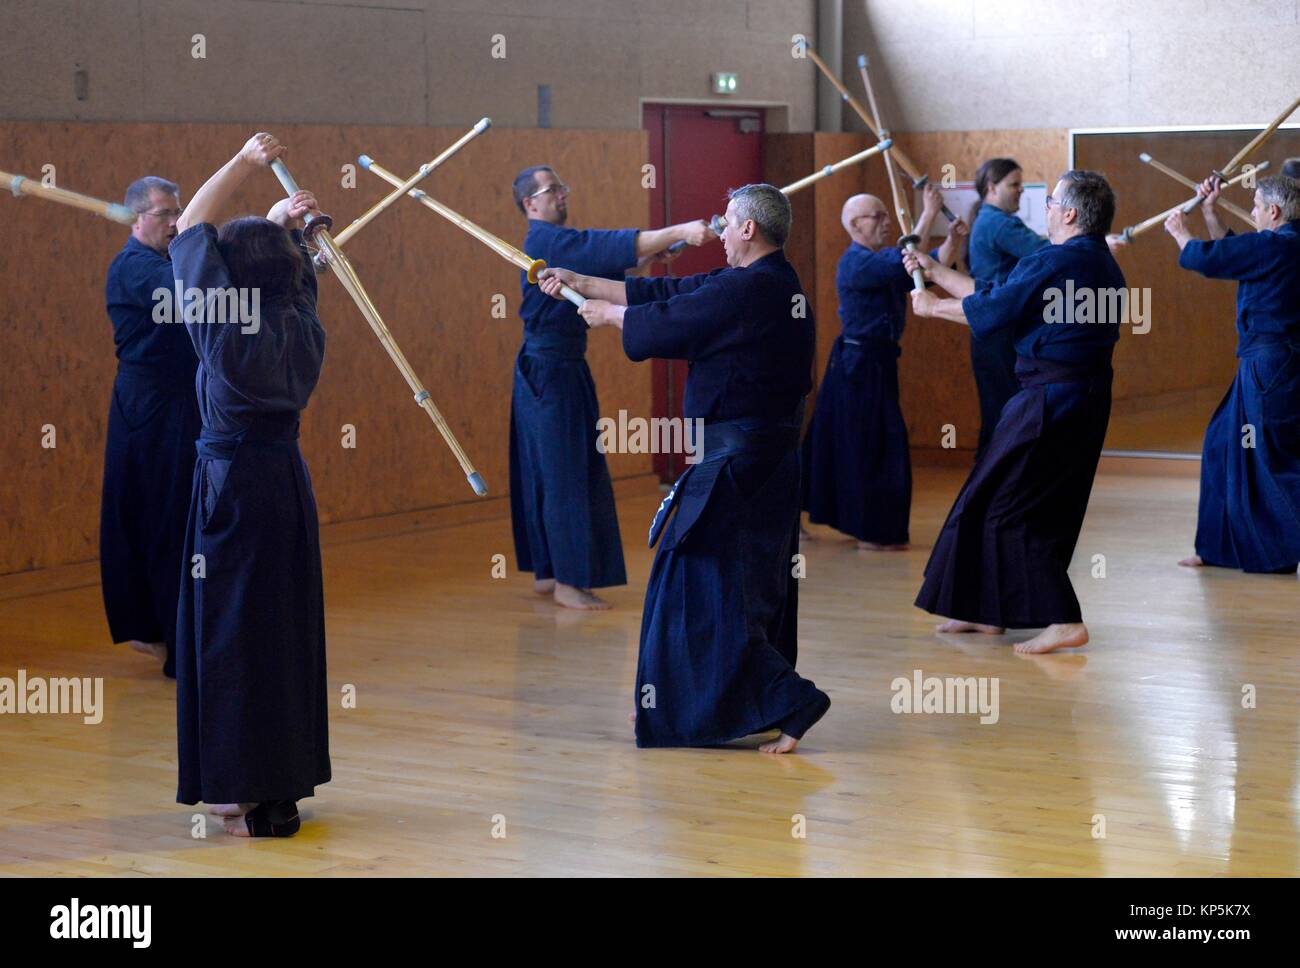 Persone azienda reale spade samurai durante un esercizio swordsmanship chiamato o kenjutsu iaido arti marziali dimostrazione,Sartrouville,Yvelines Foto Stock